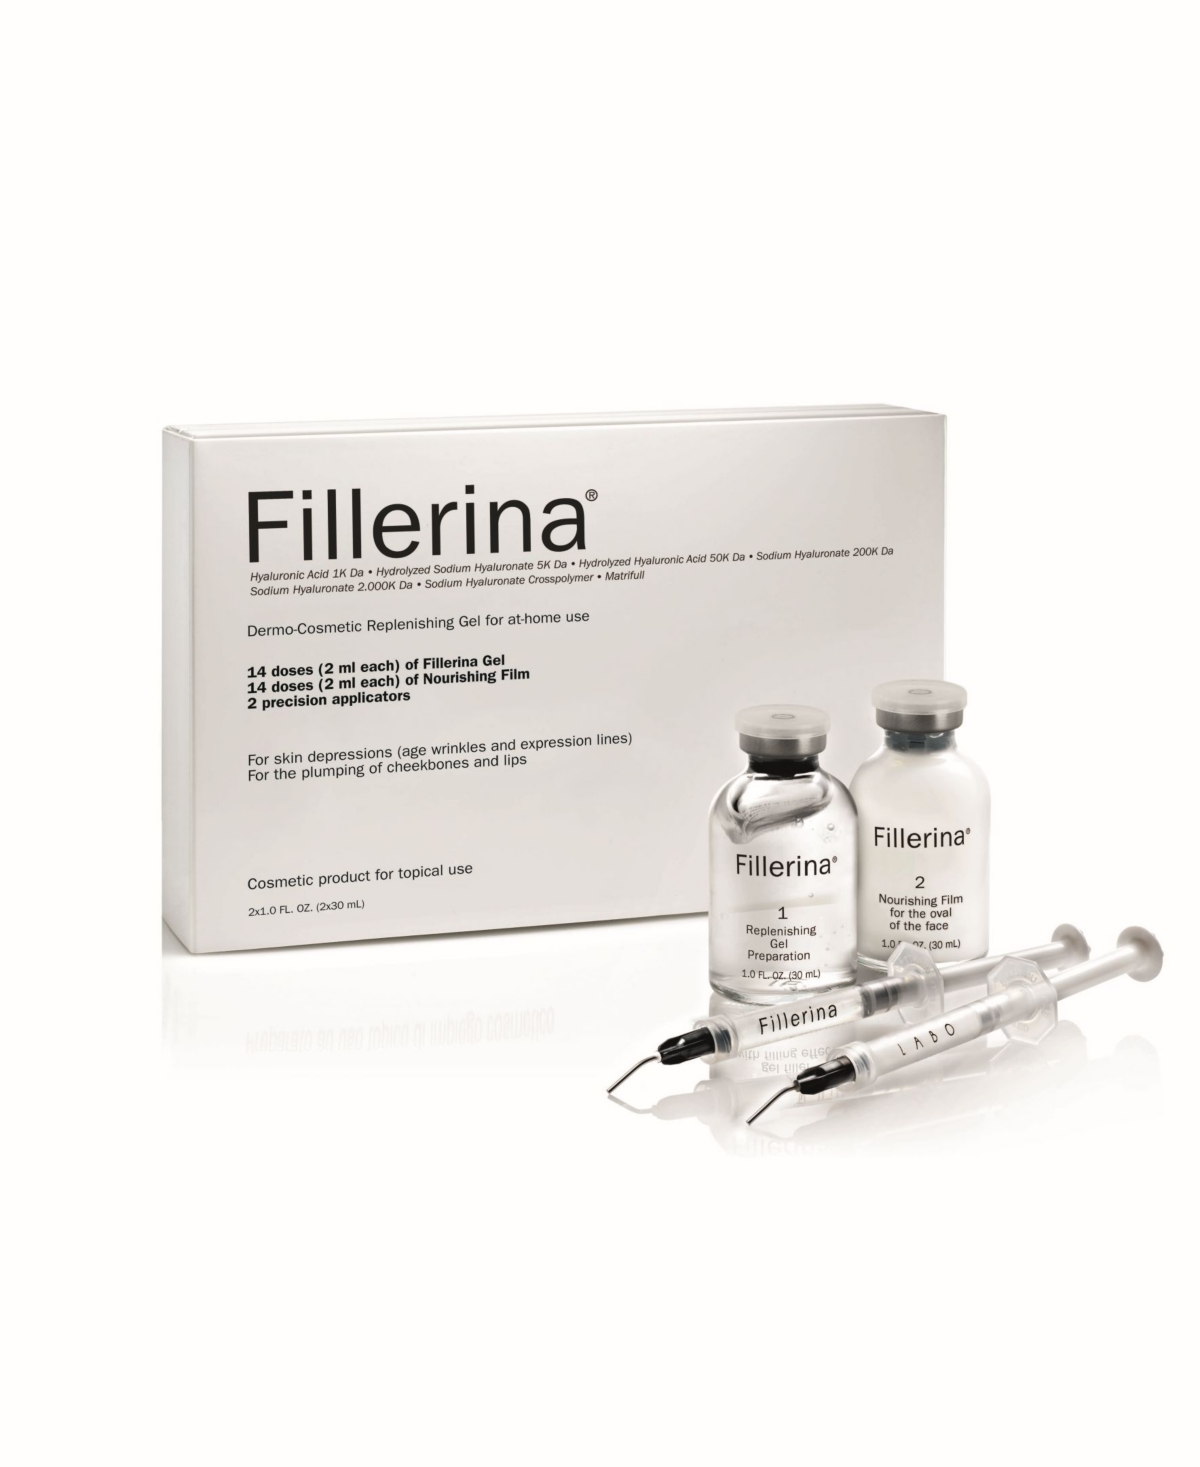 Fillerina Replenishing Gel Grade 2